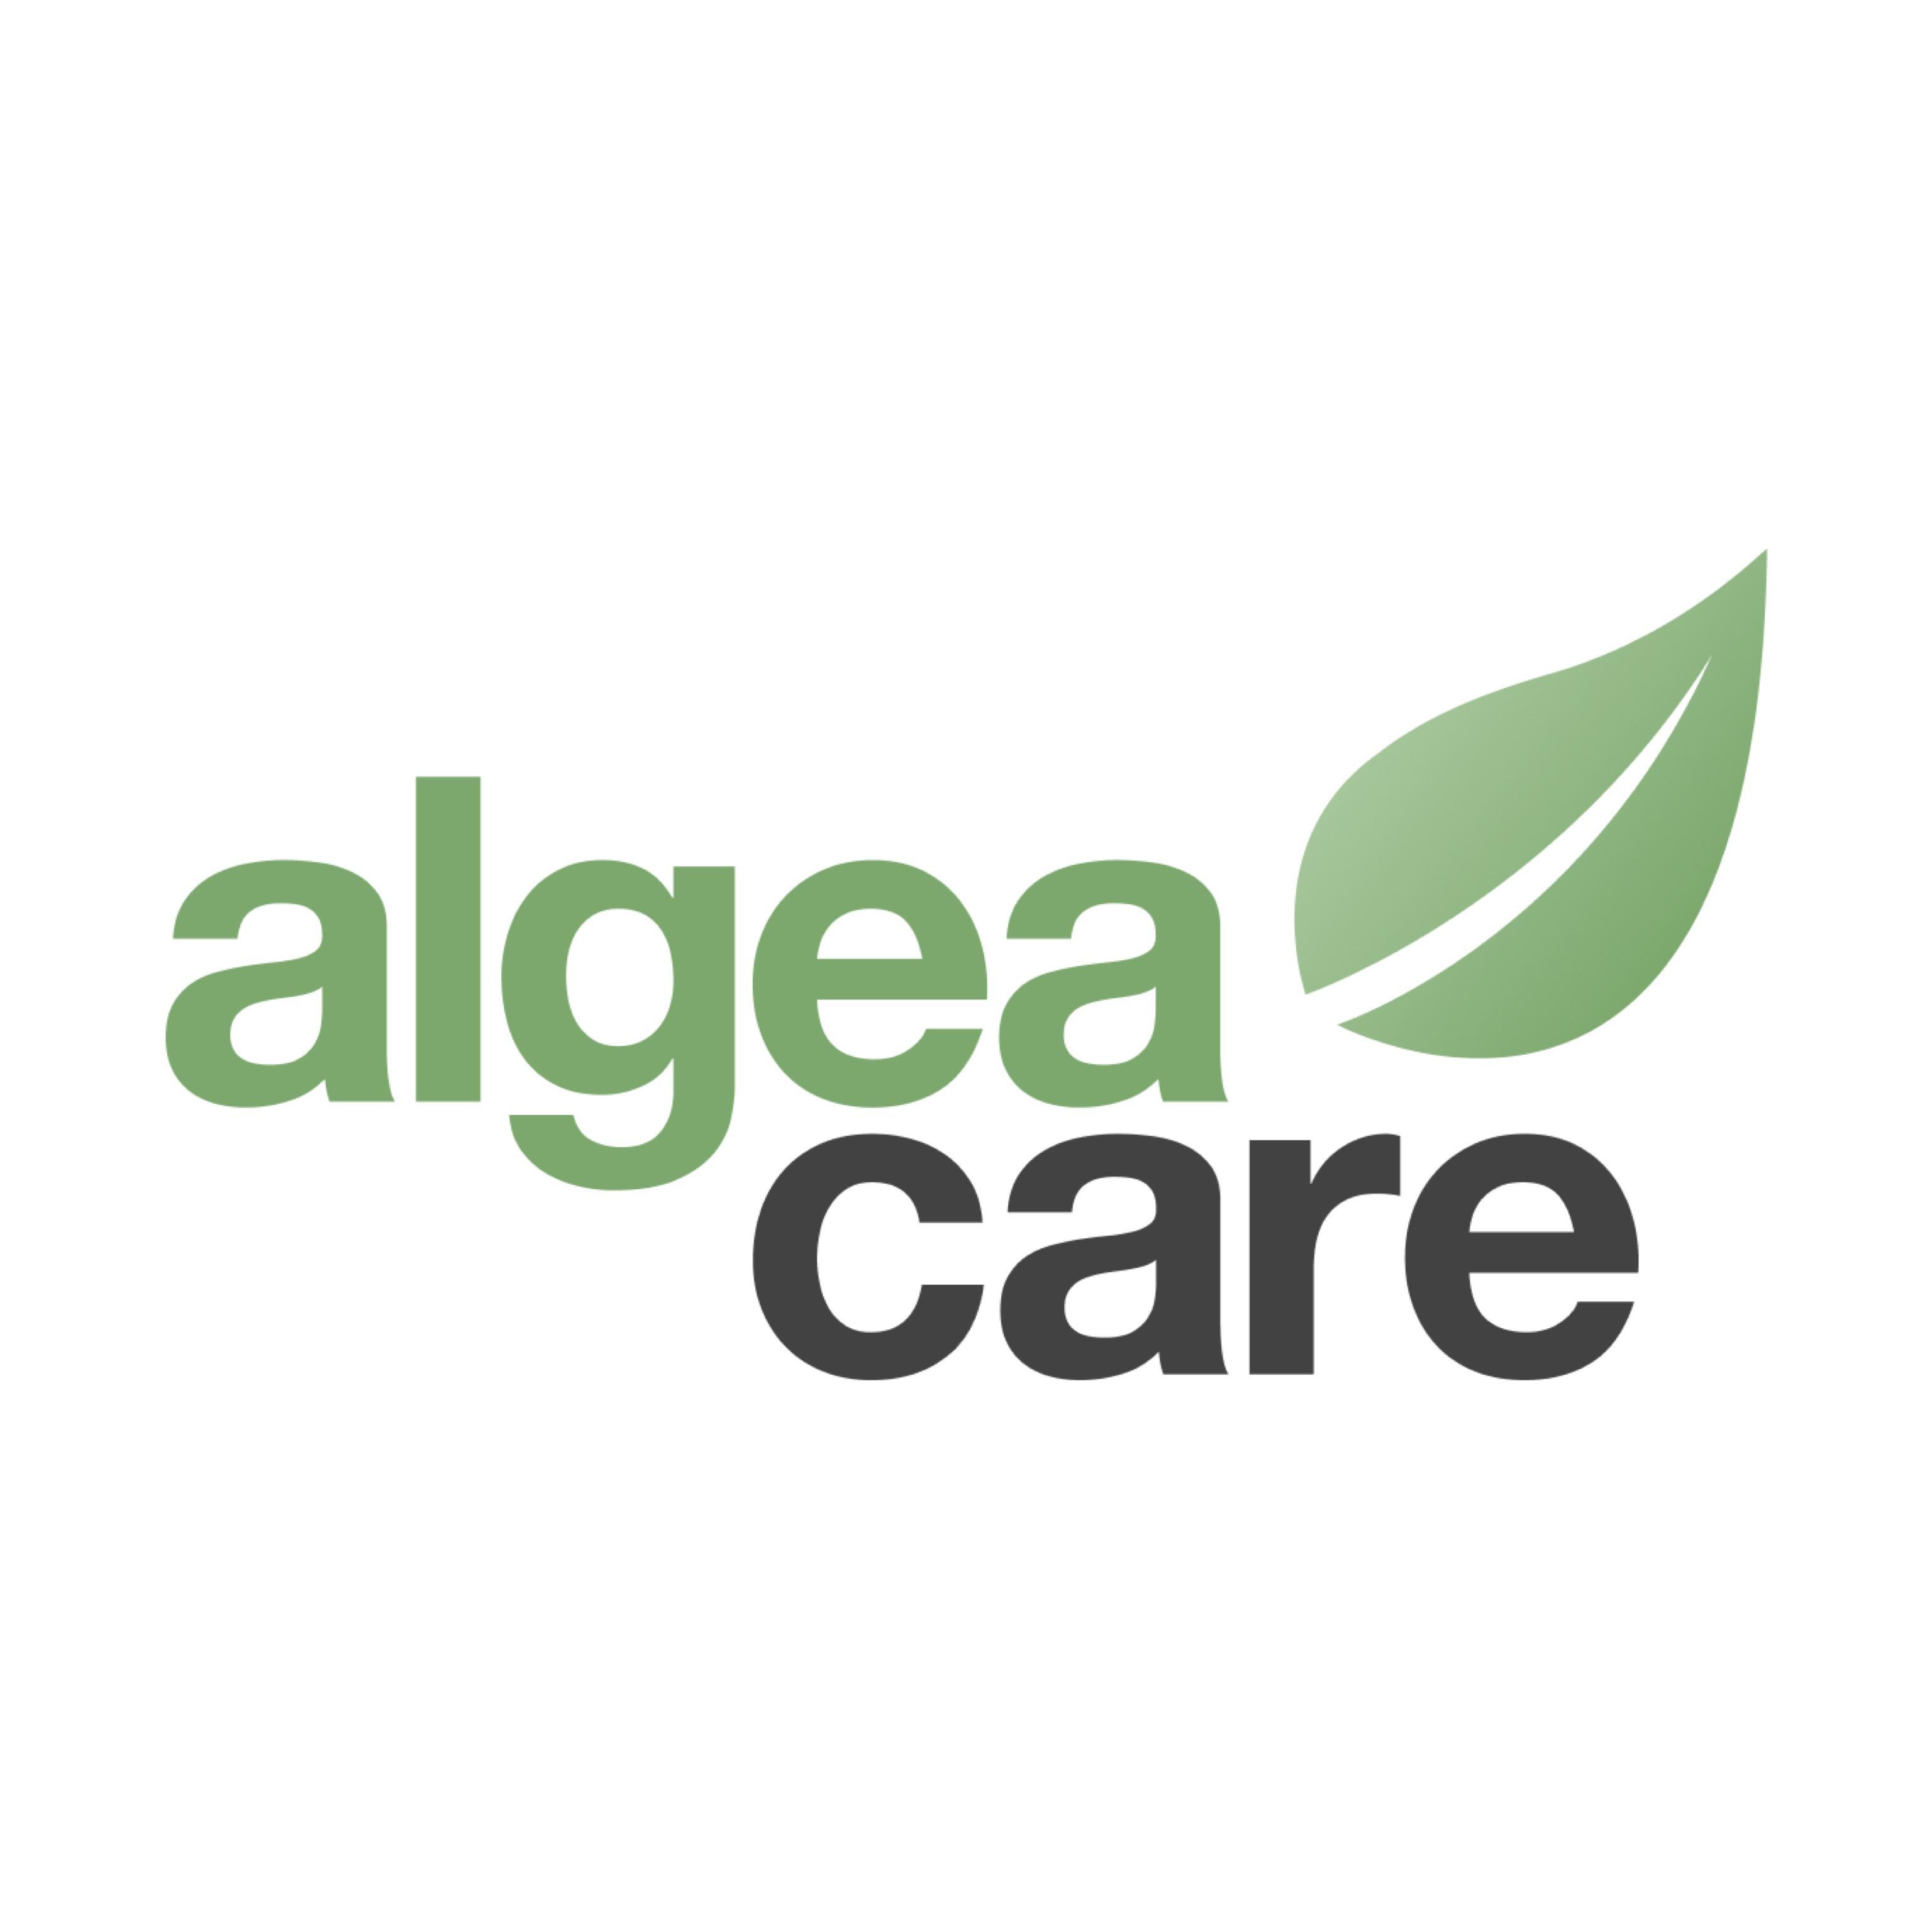 Algea Care Therapiezentrum Leipzig in Leipzig - Logo